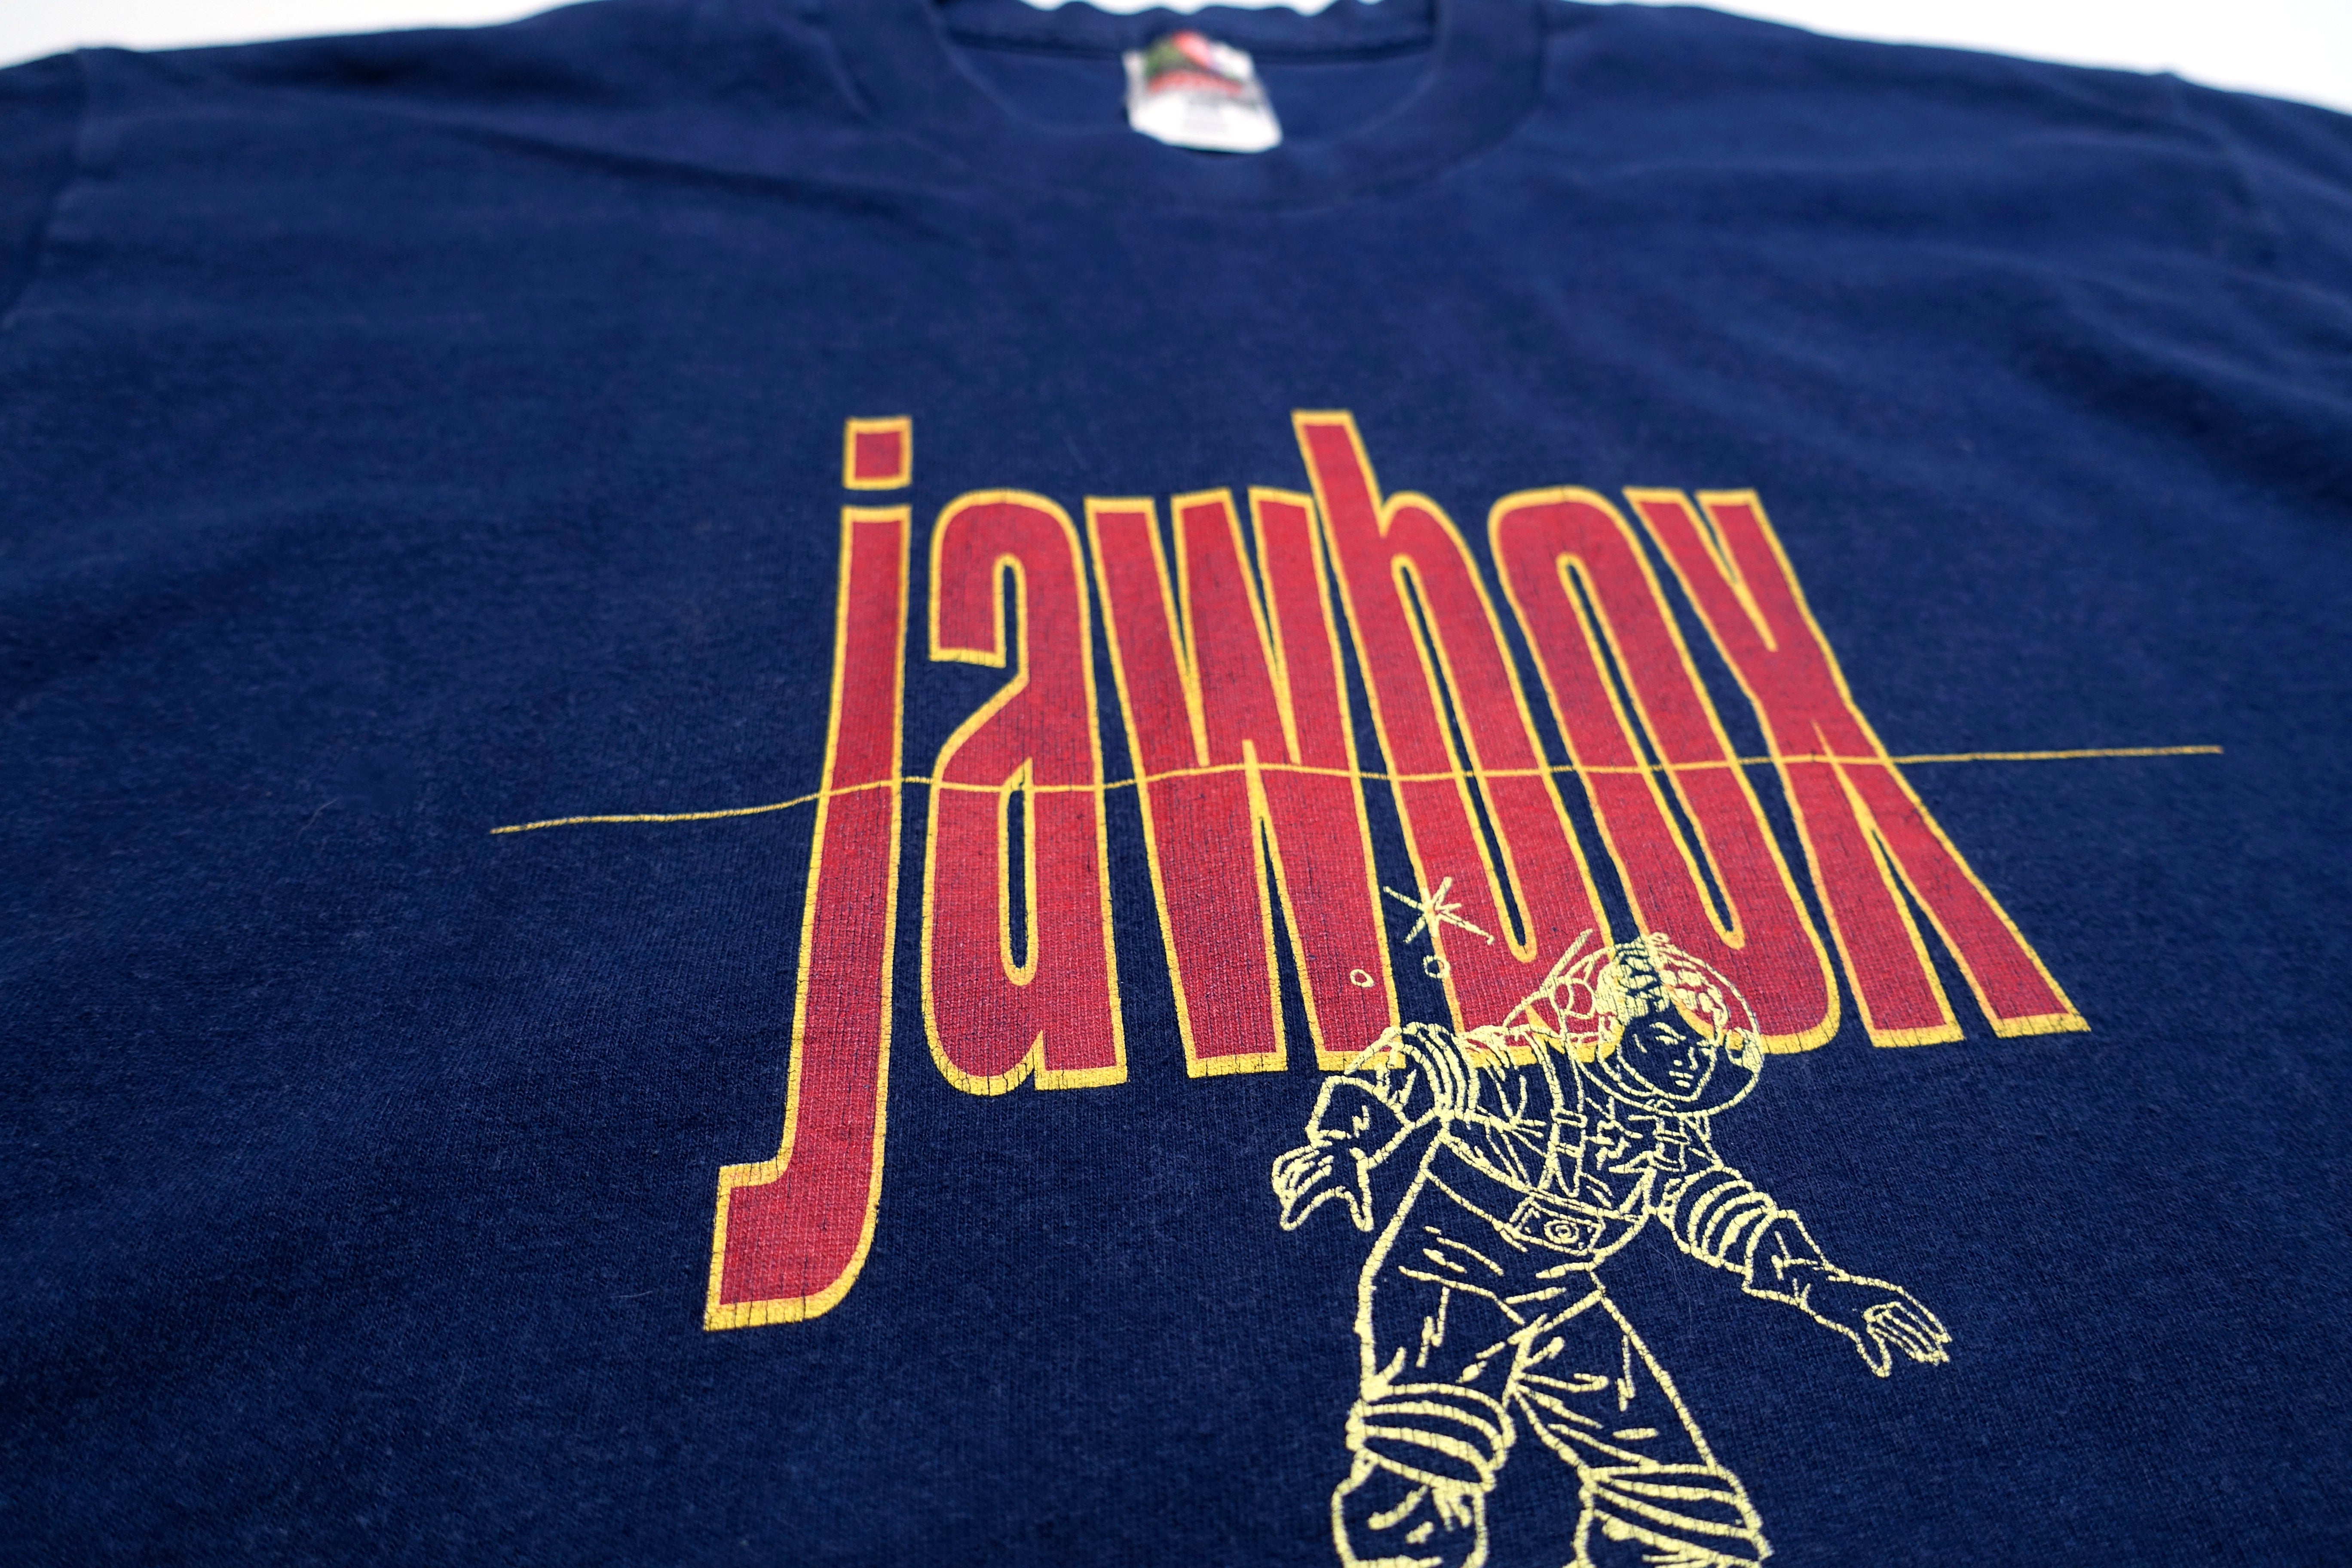 Jawbox - Spaceman 1994 Tour Shirt Size Large